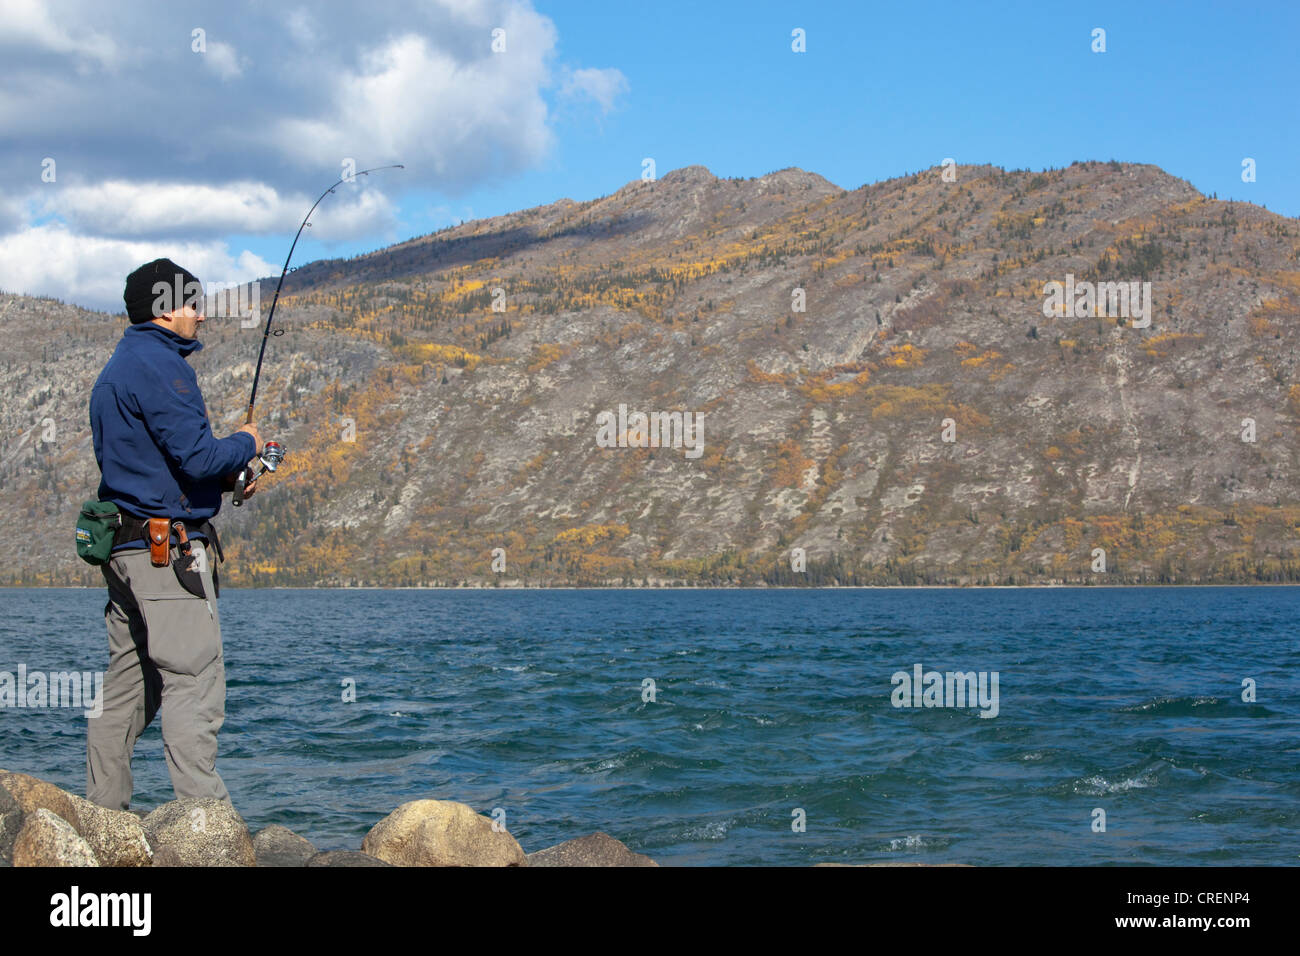 https://c8.alamy.com/comp/CRENP4/man-spin-fishing-fighting-a-fish-kusawa-lake-mountains-behind-indian-CRENP4.jpg